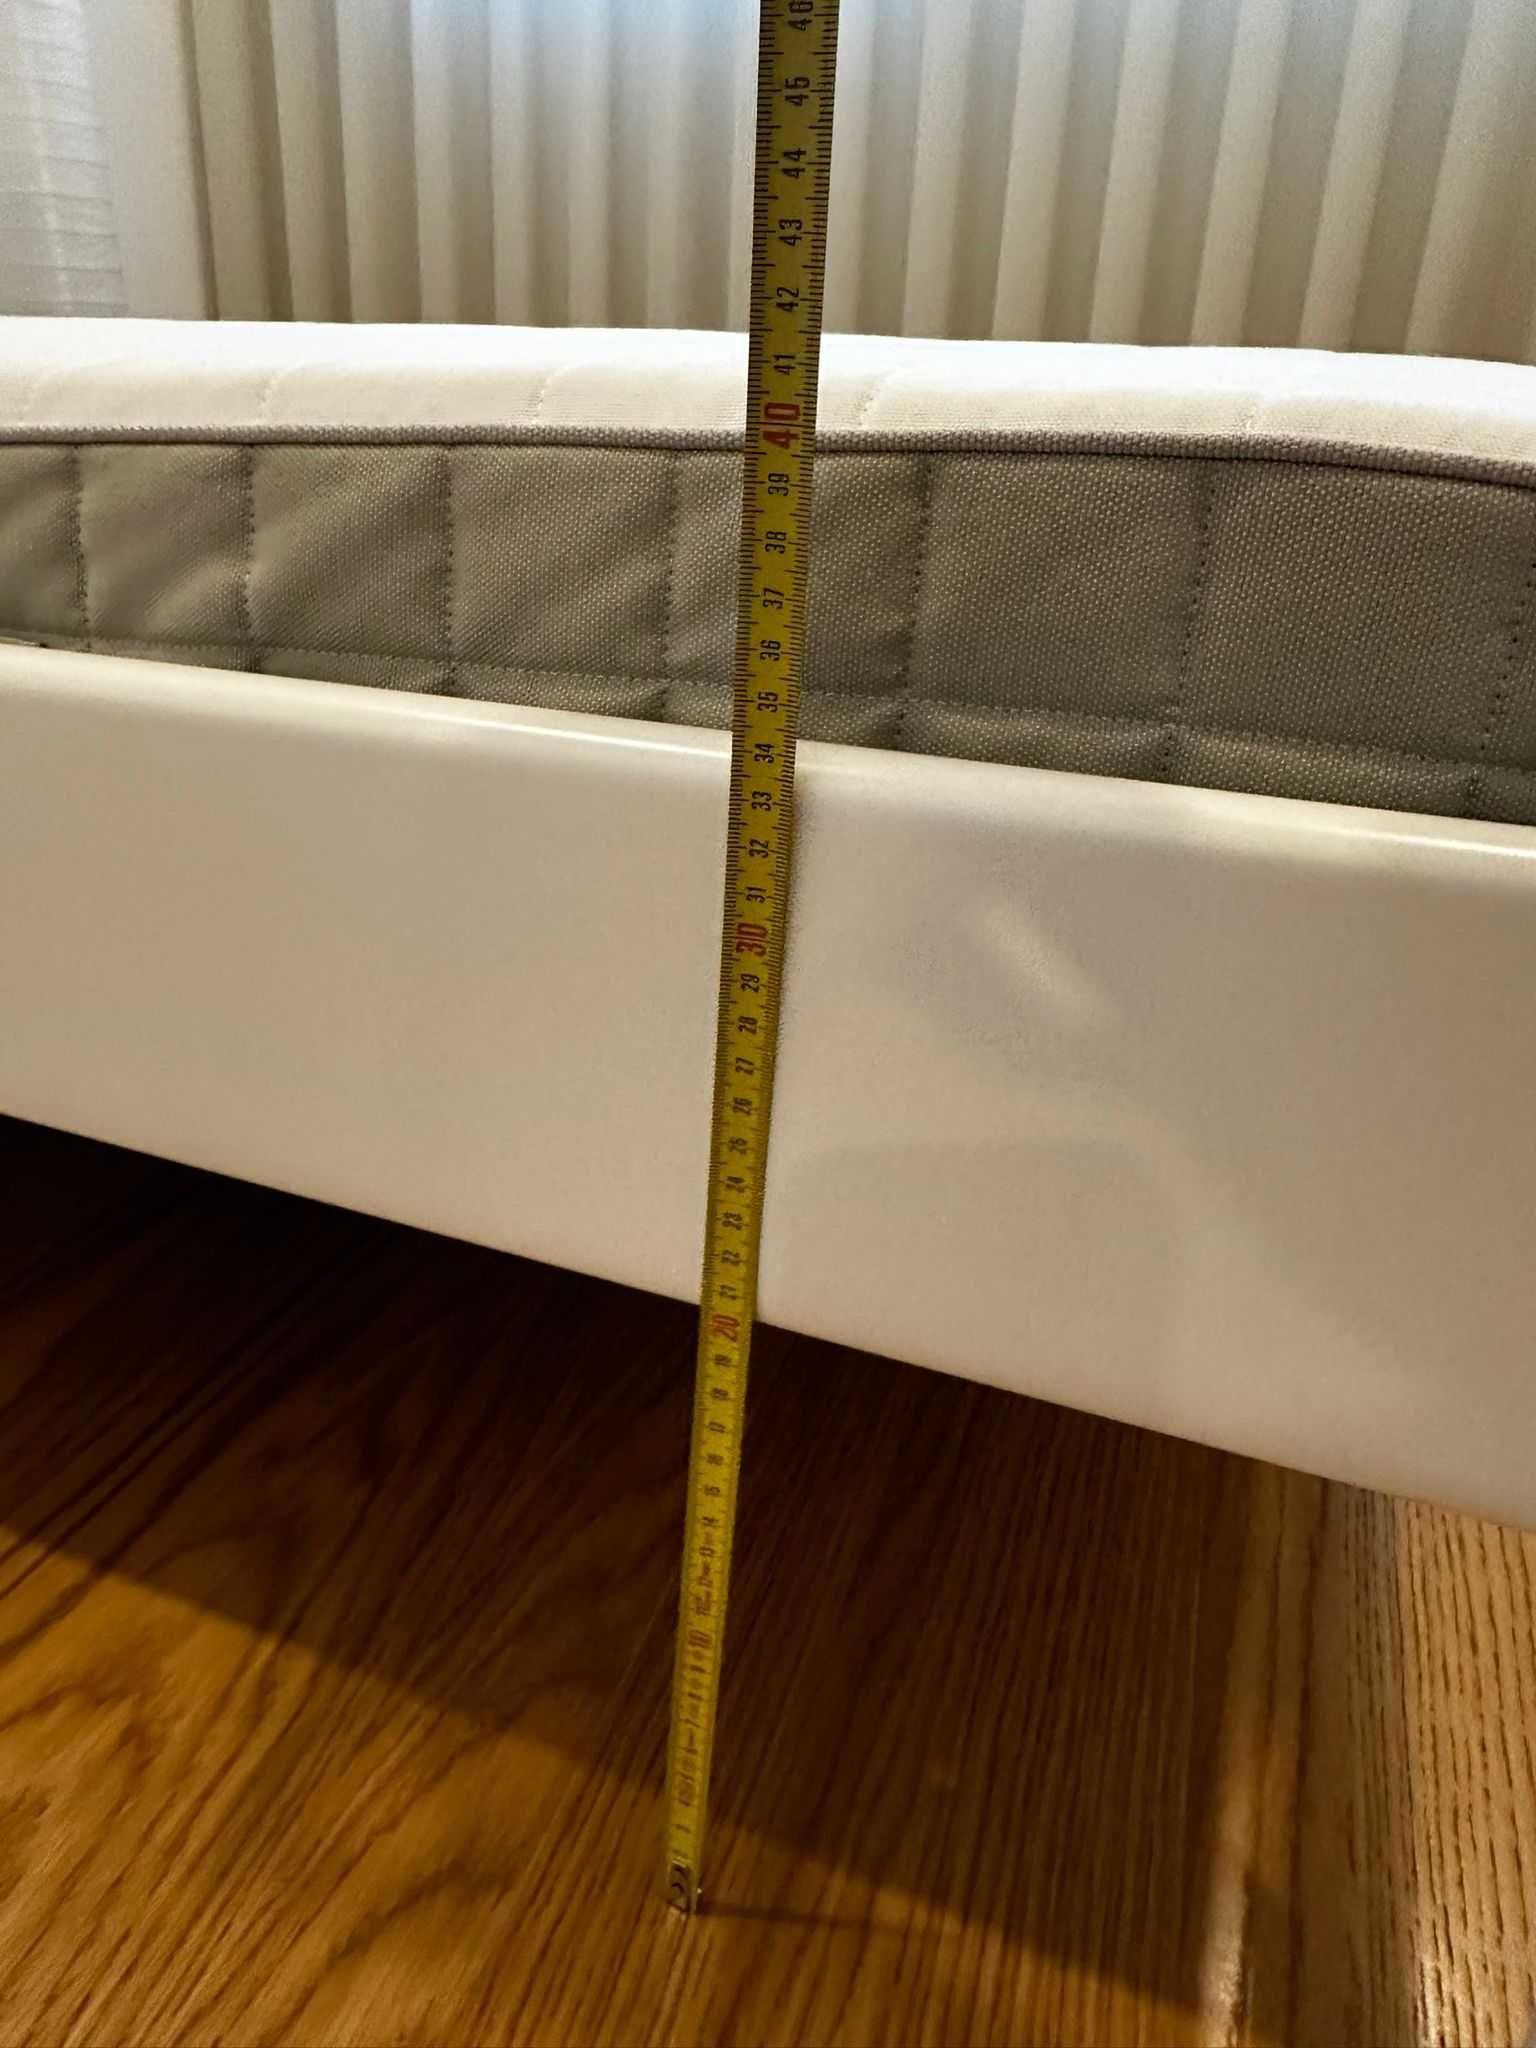 Cama de casal IKEA completa c/estrado + colchão (140x200cm)